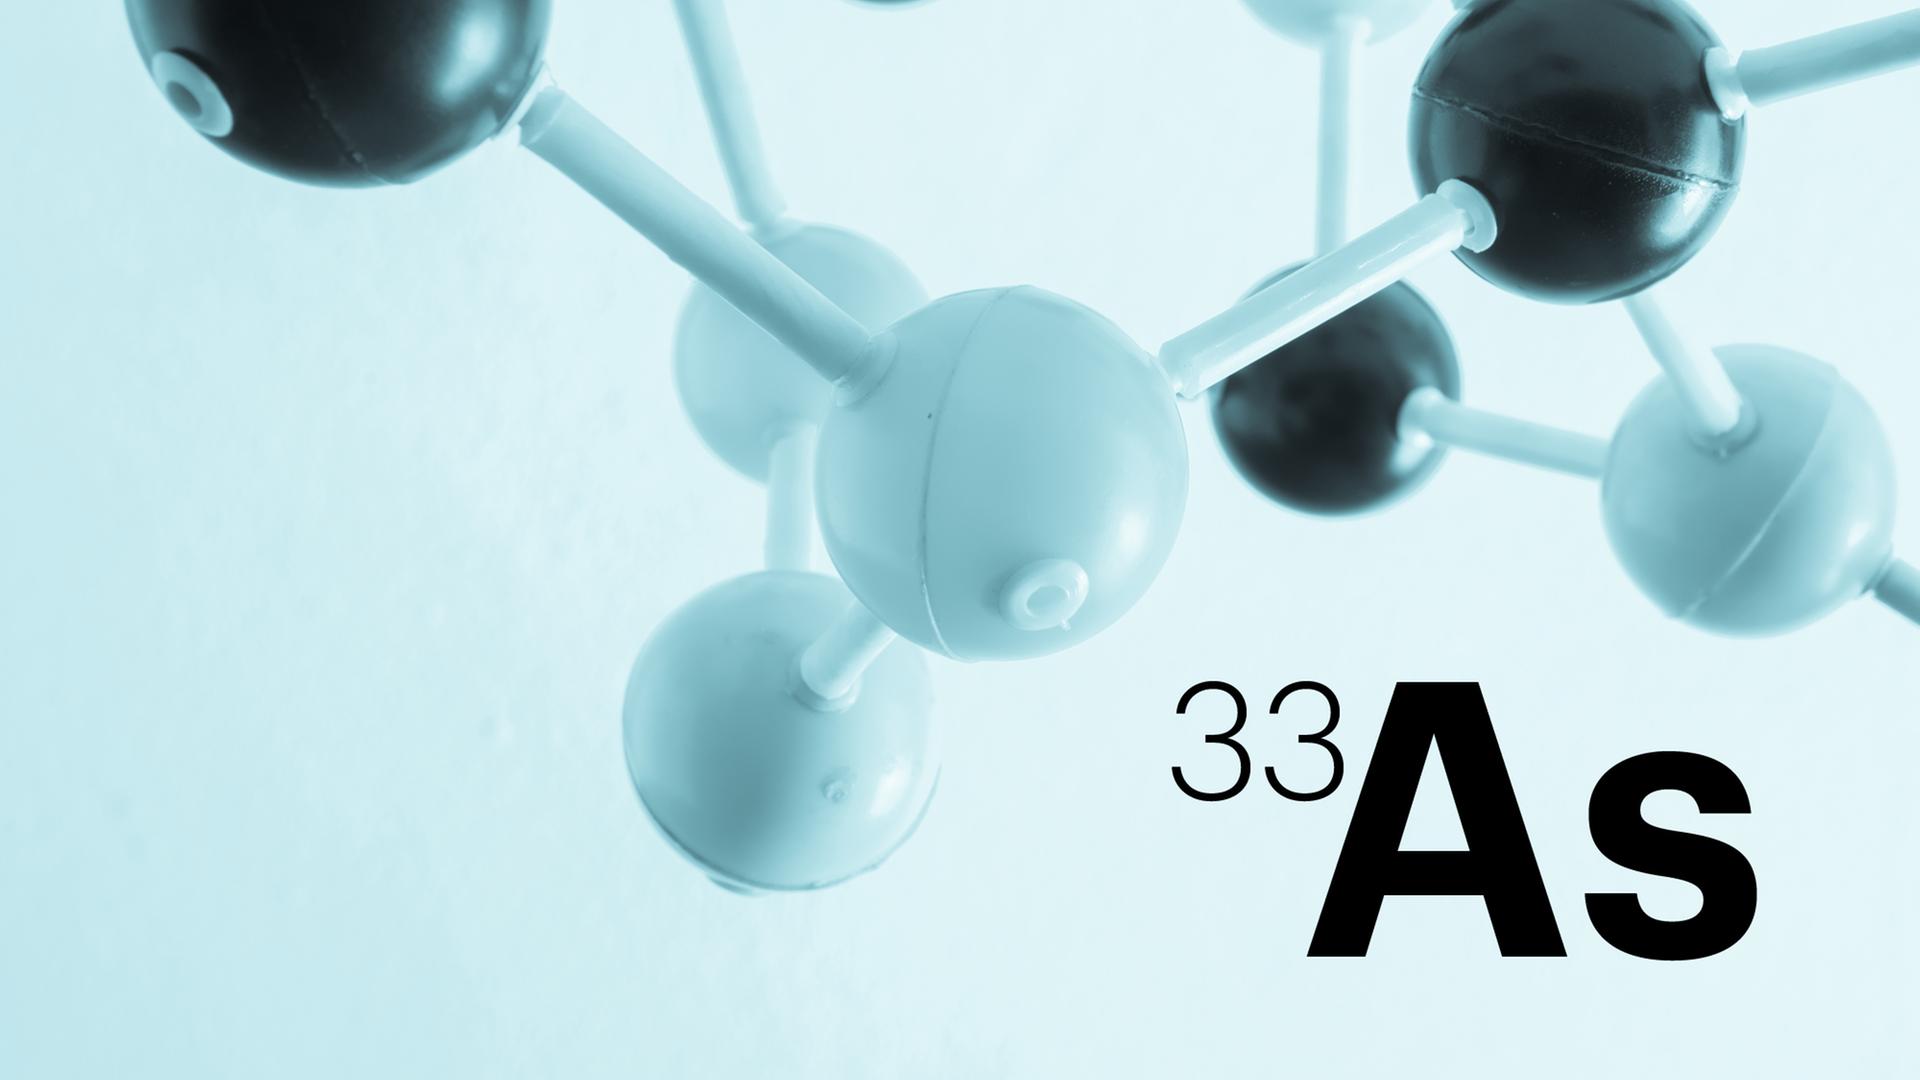 Das Modell eines Moleküls ist hinter der Abkürzung As (für Arsen) zu sehen.